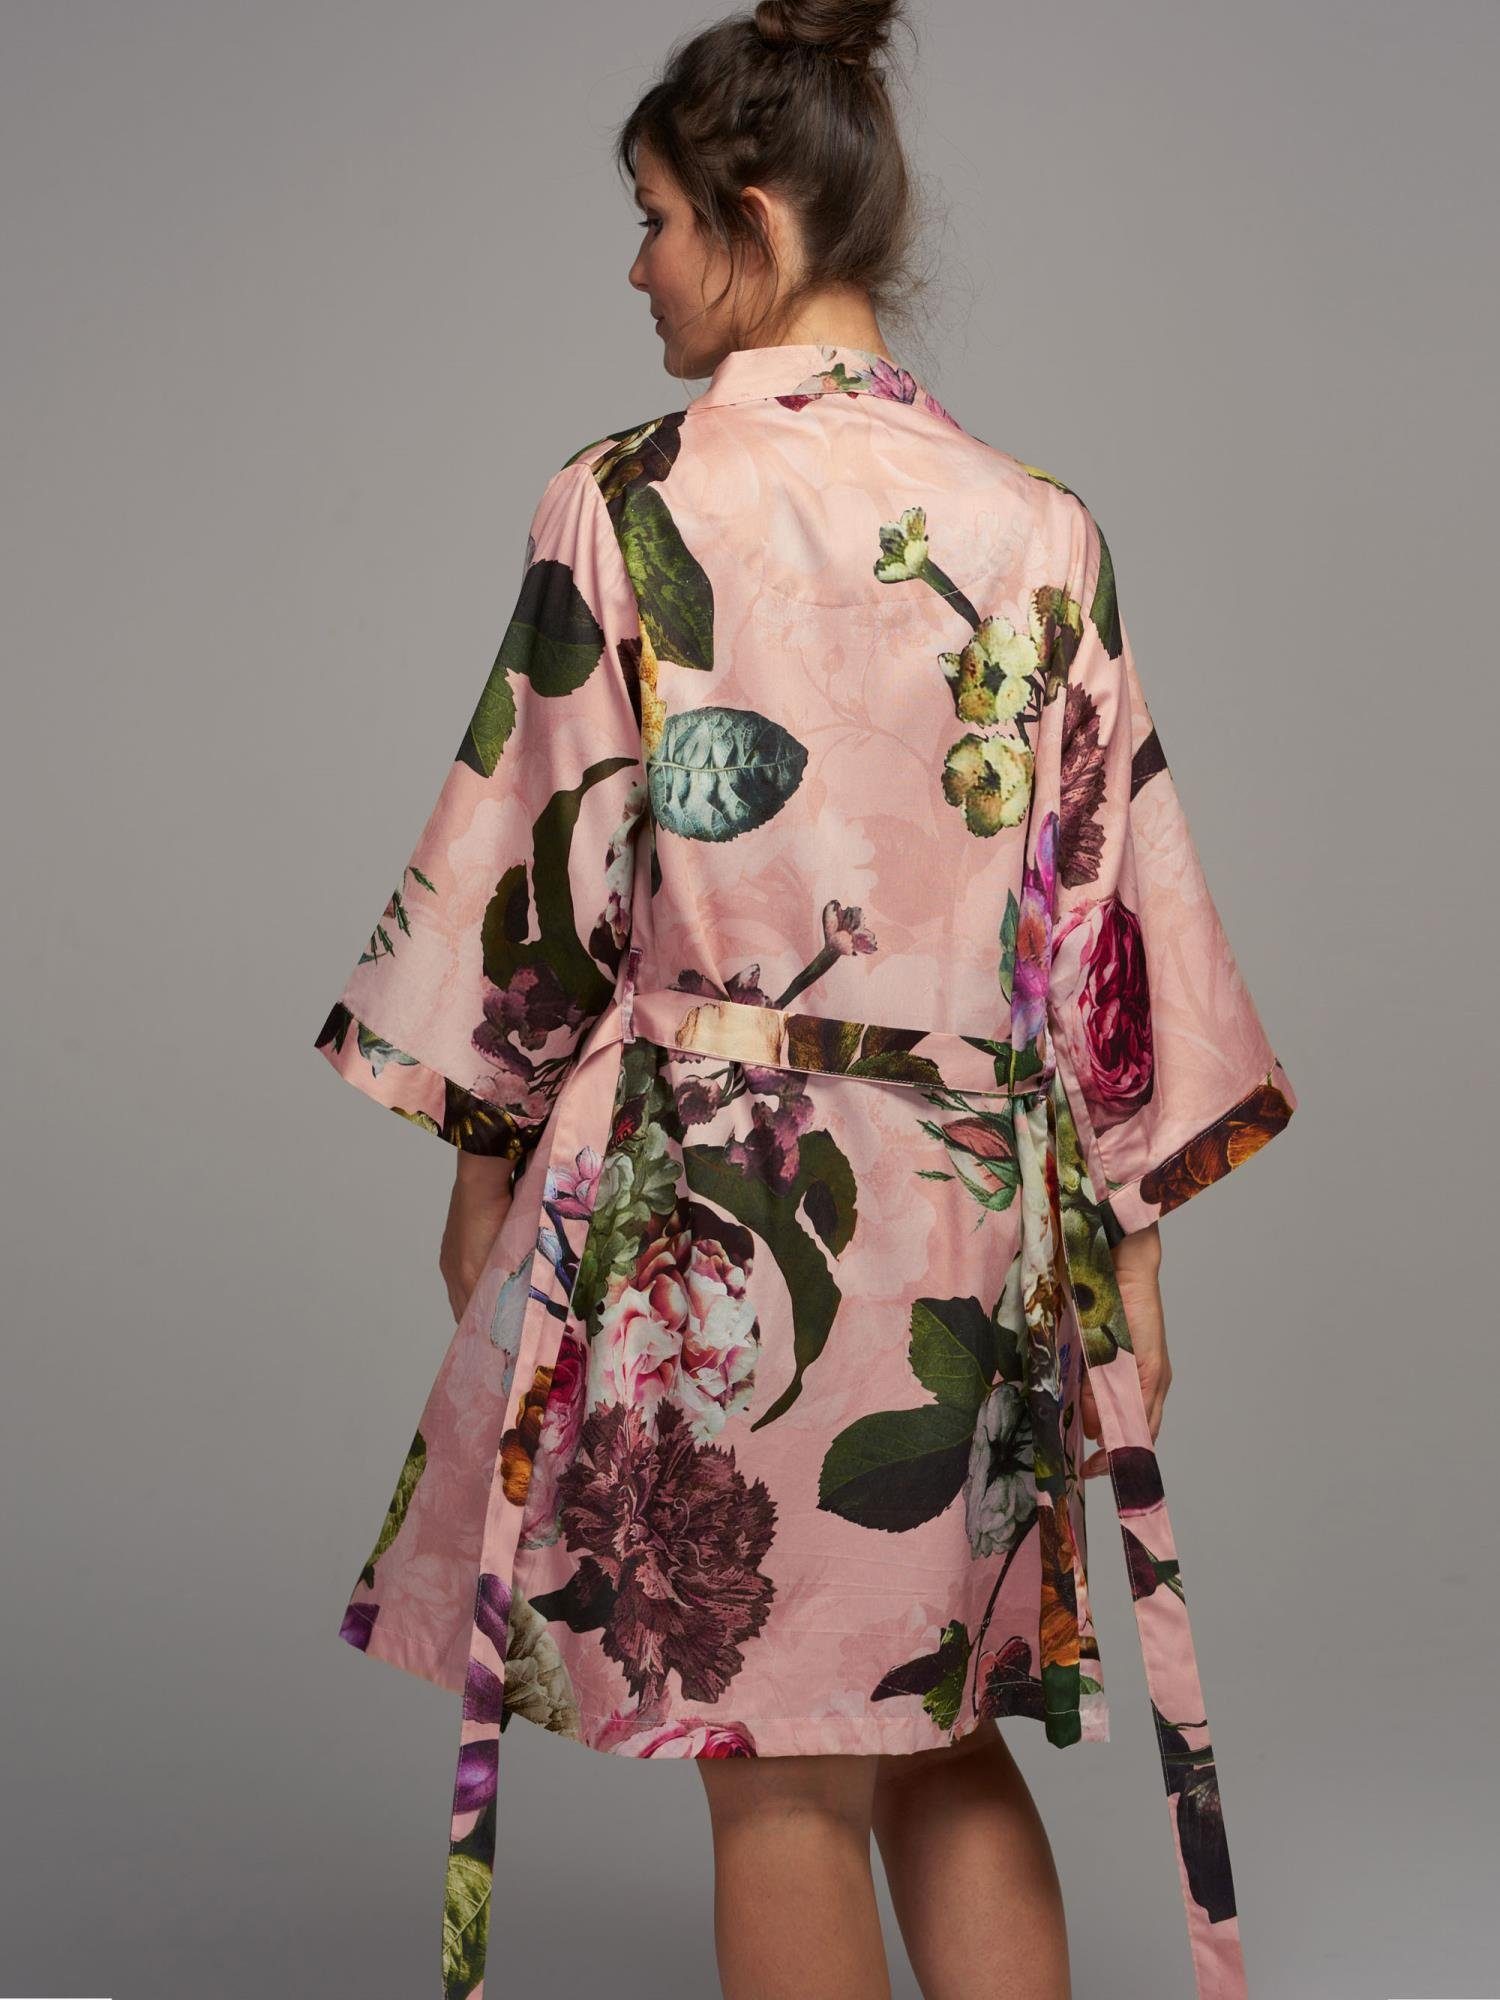 Kurzform, Baumwolle, Kimono Rose Fleur, Gürtel, Kimono-Kragen, Blumenprint Essenza wunderschönem mit